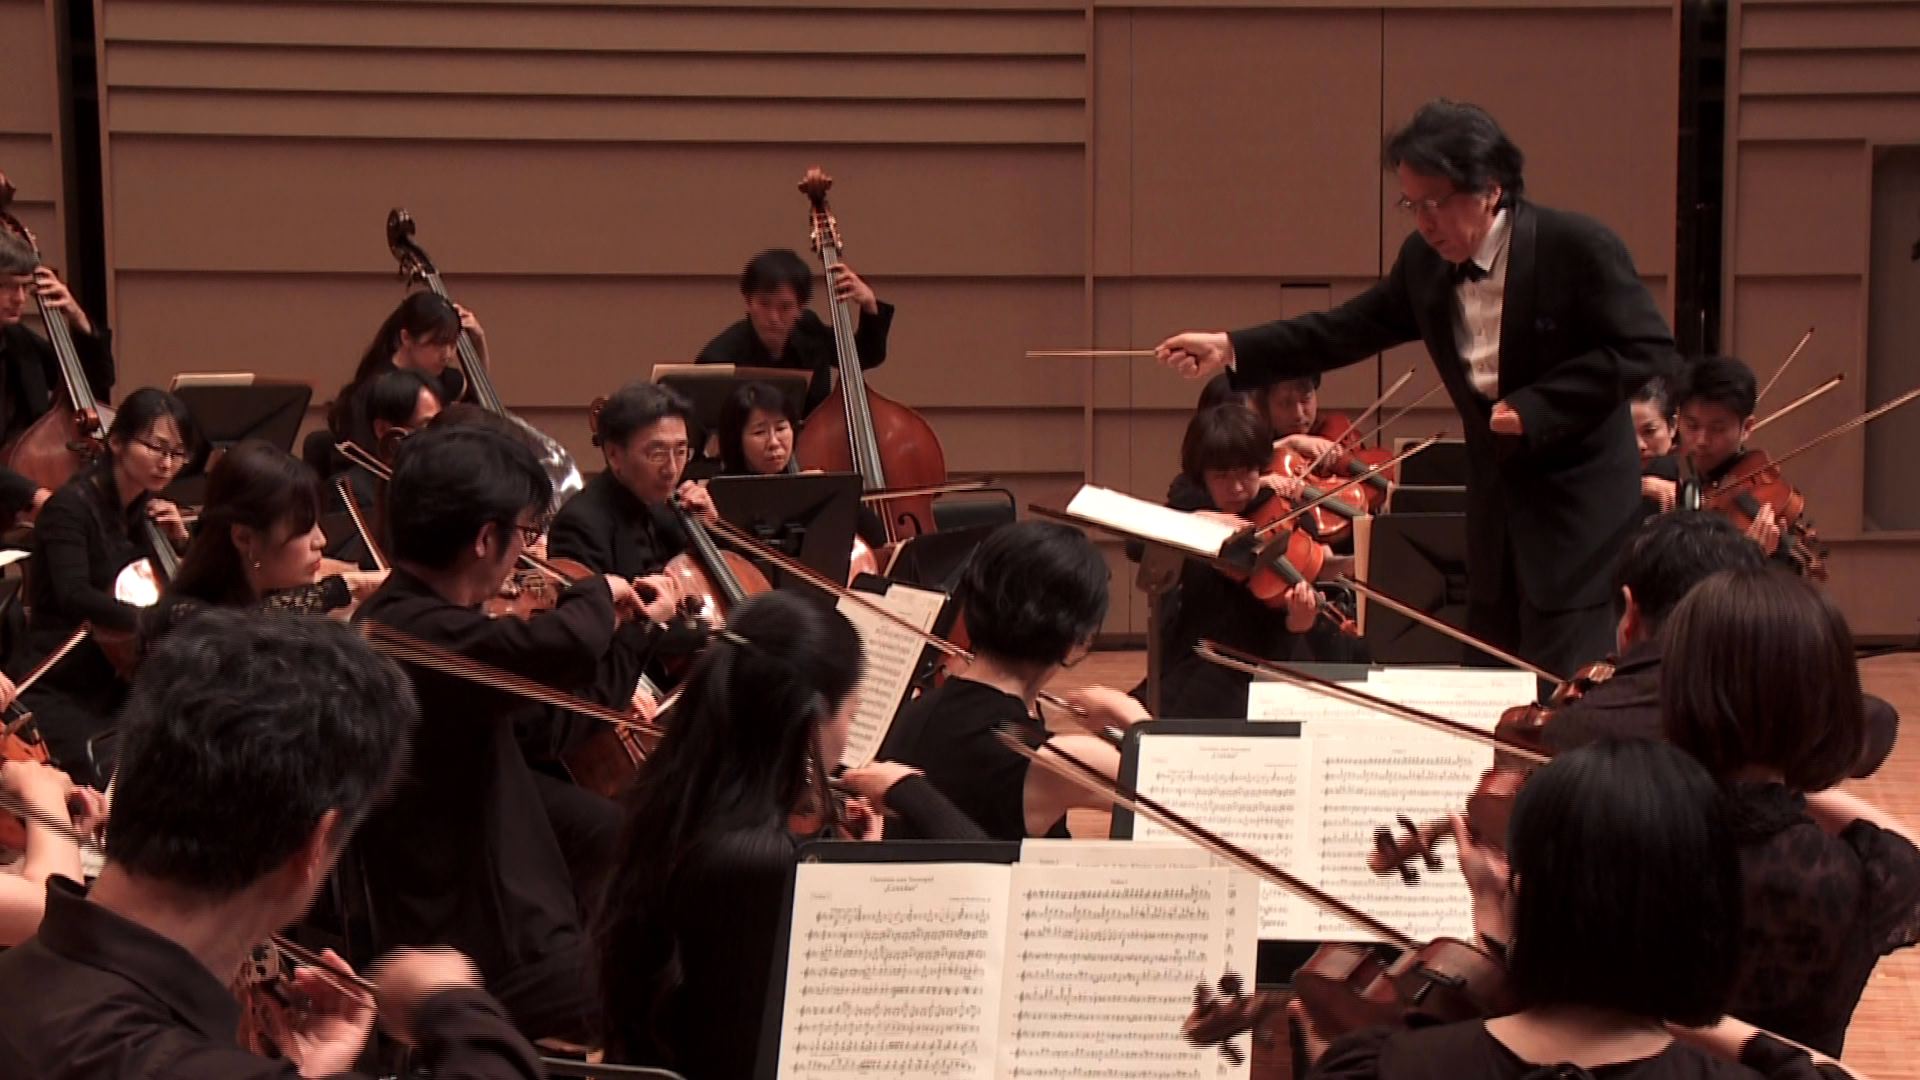 指揮：沼尻竜典
近江シンフォニエッタ
ベートーヴェン：コリオラン序曲
Ryusuke Numajiri, Conductor
Omi Sinfonietta
L. v. Beethoven: Overture to Collin's Coriolan